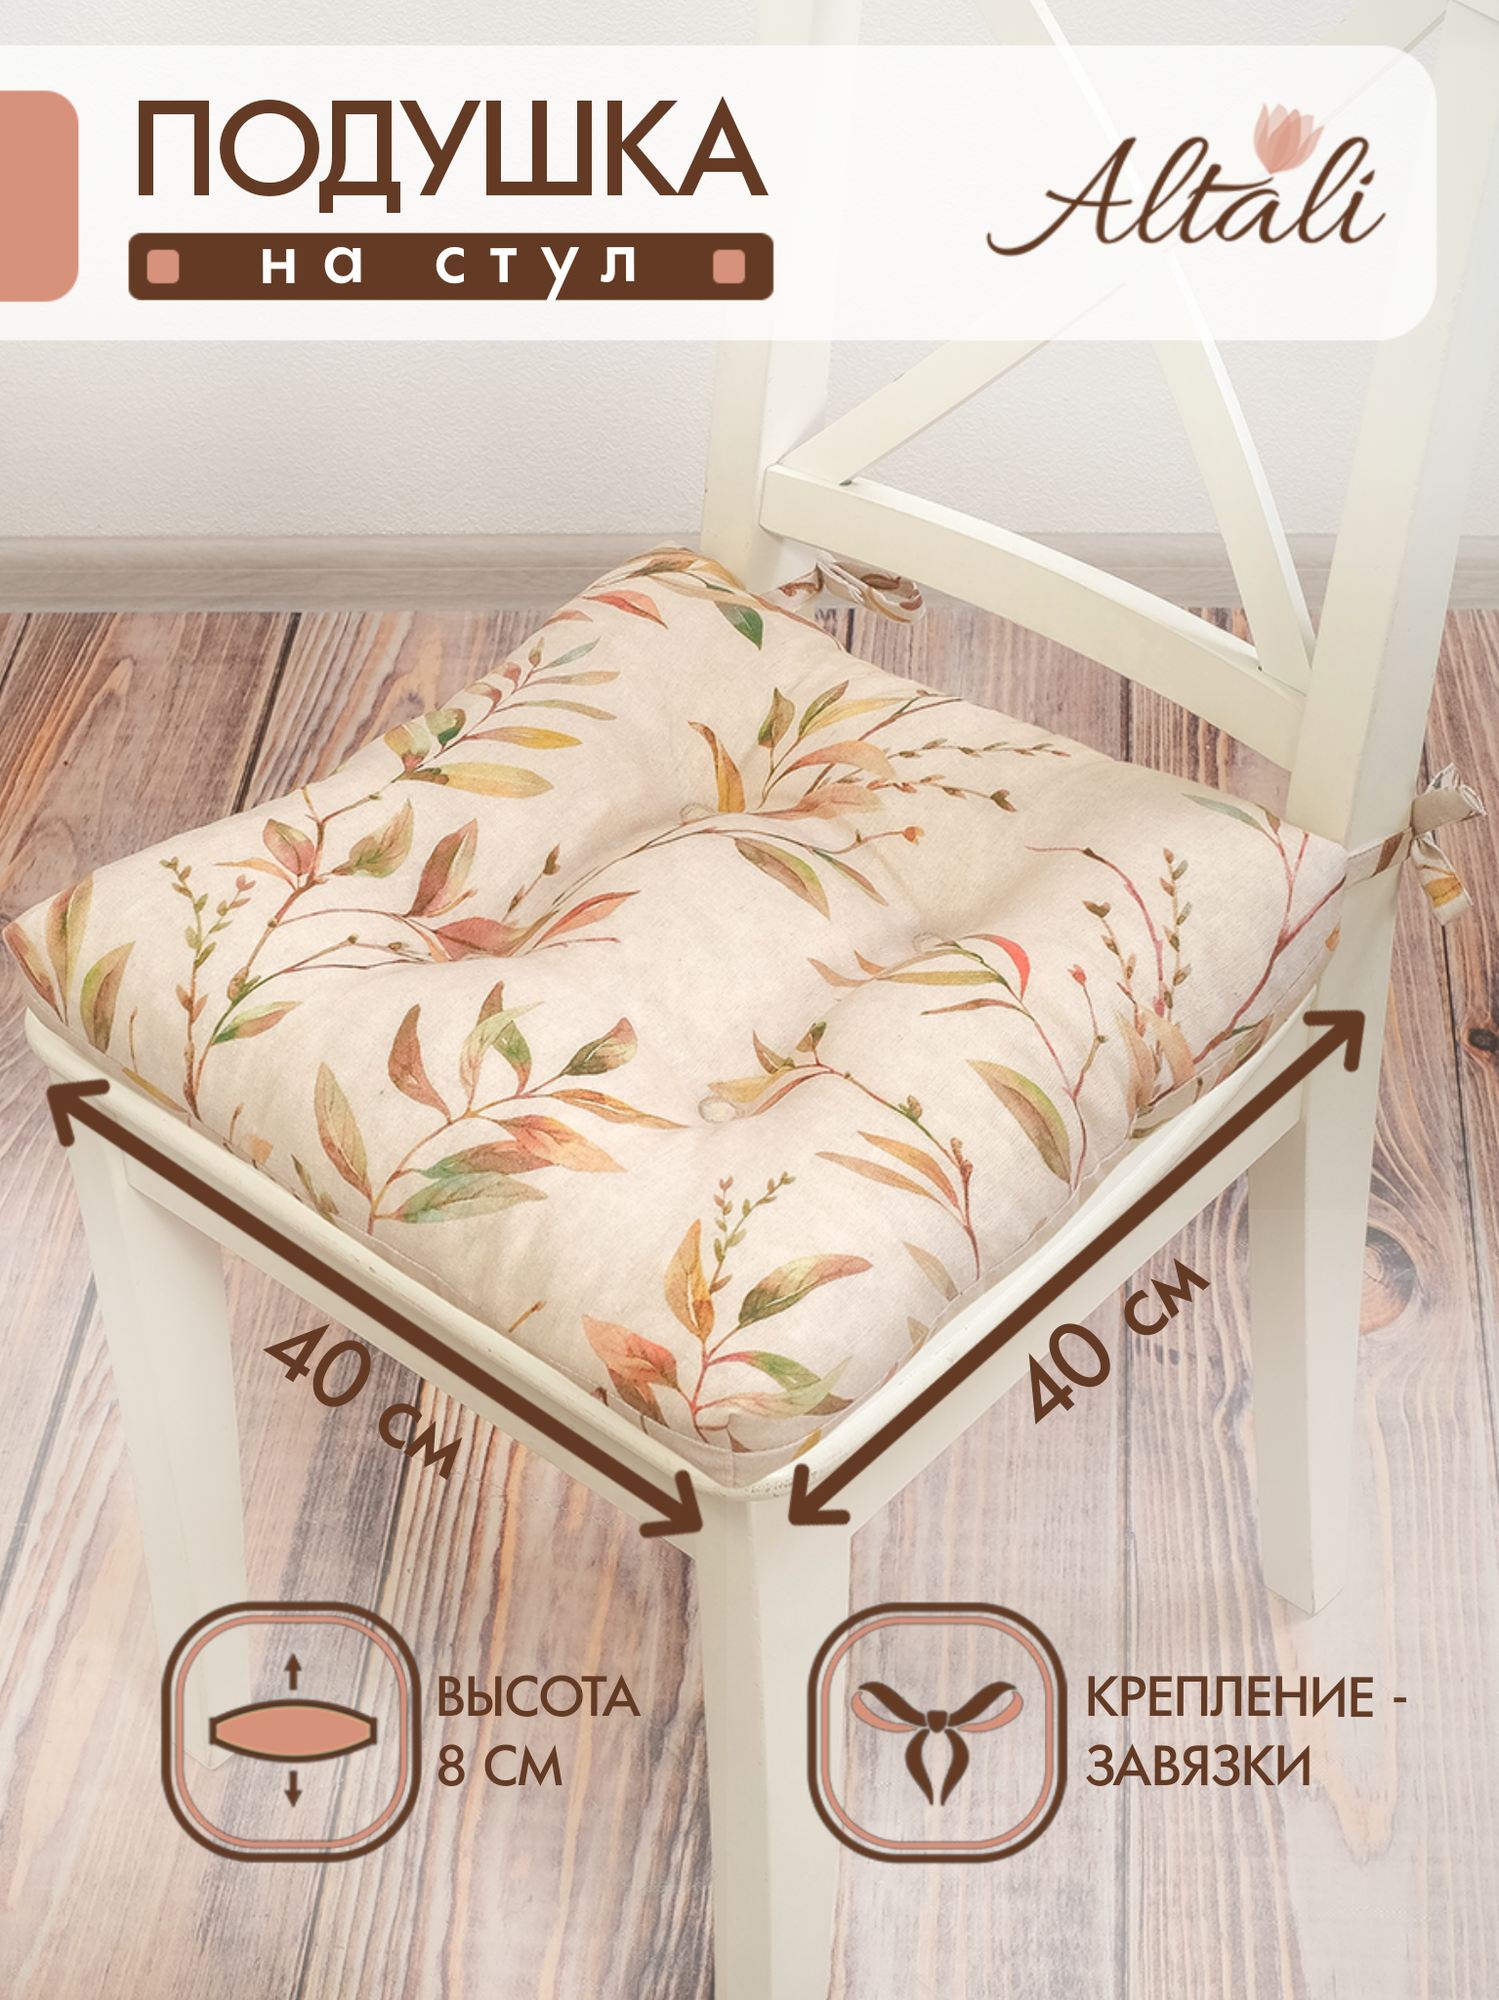 Подушка на стул /40*40 см / на завязках / ткань хлопок /для кухни зала гостиной беседки / Altali